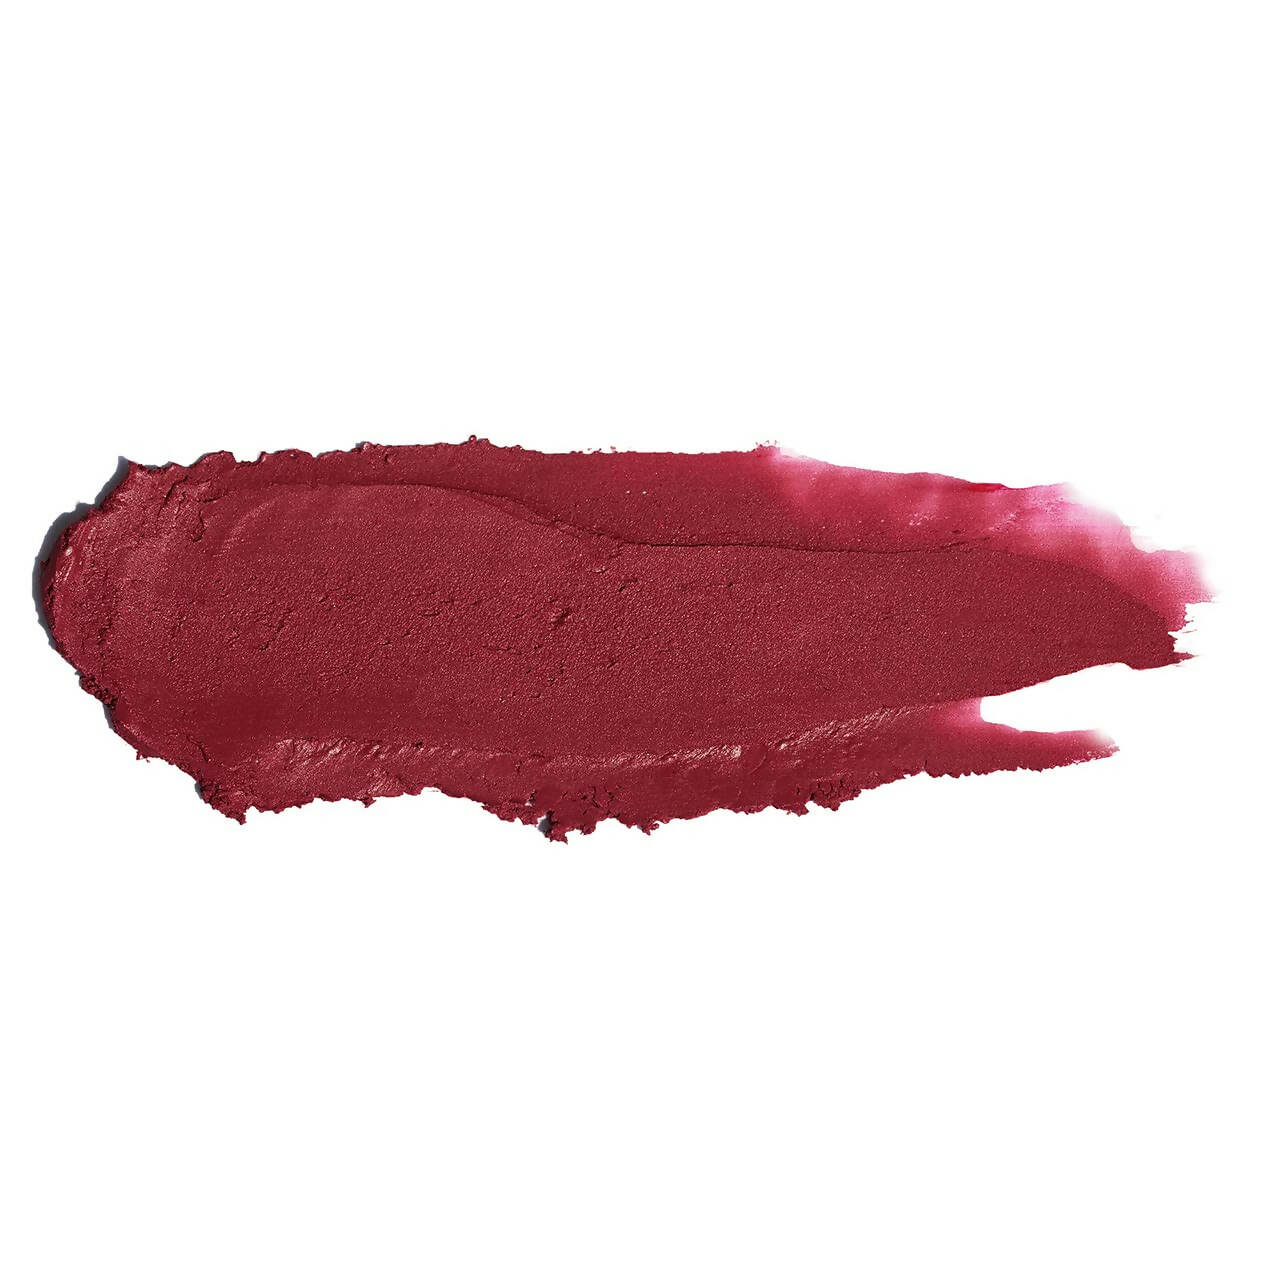 FAE Beauty Merlot Pink Modern Matte Lipstick - Shade Eccentric - Distacart